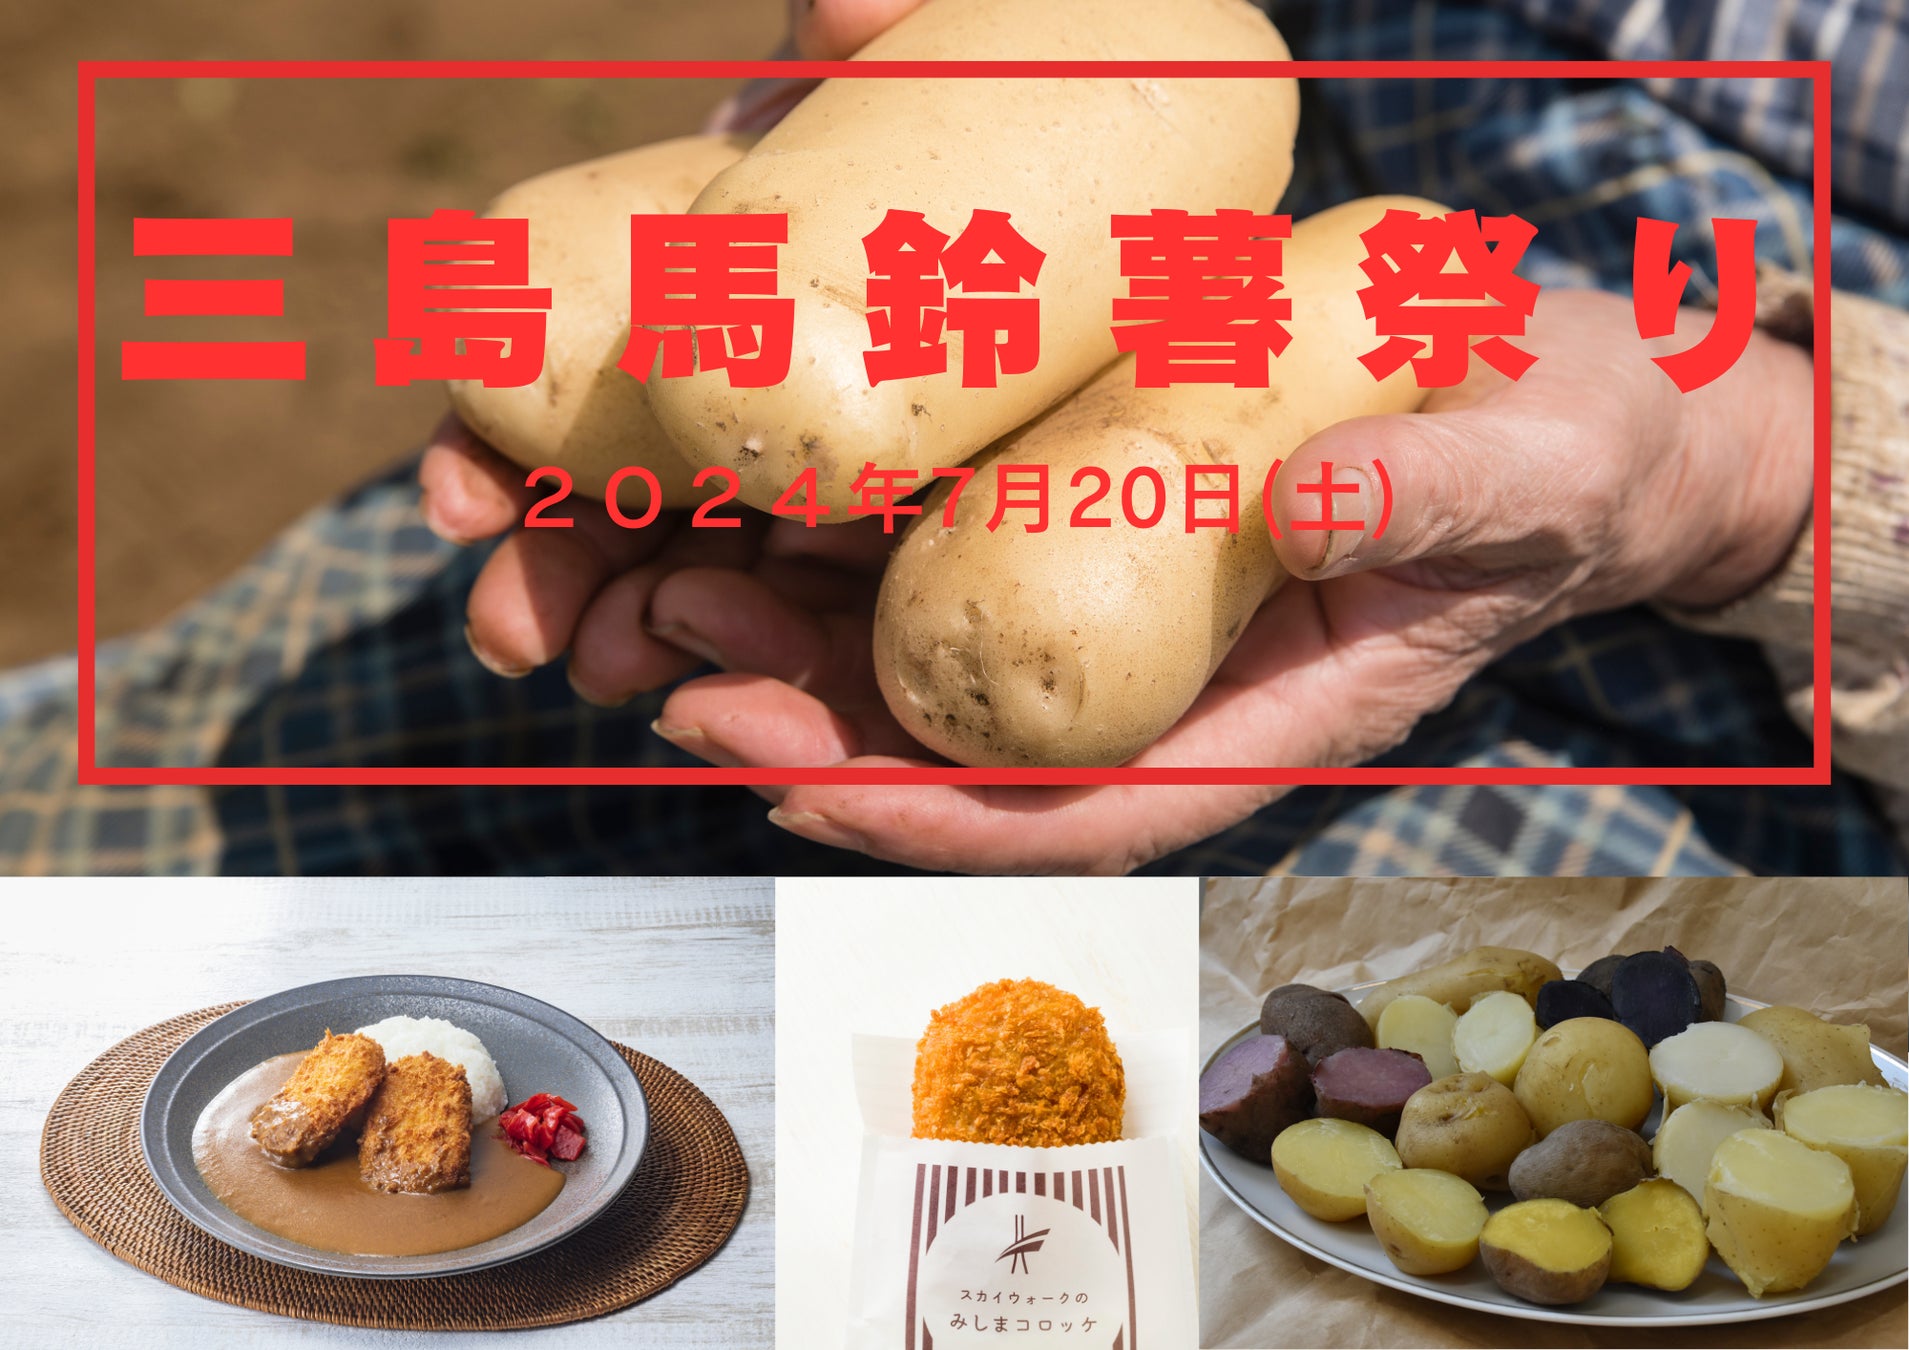 【静岡・三島】三島馬鈴薯など地場産の野菜・果物を堪能「三島馬鈴薯祭り」三島スカイウォークで7月20日に開催